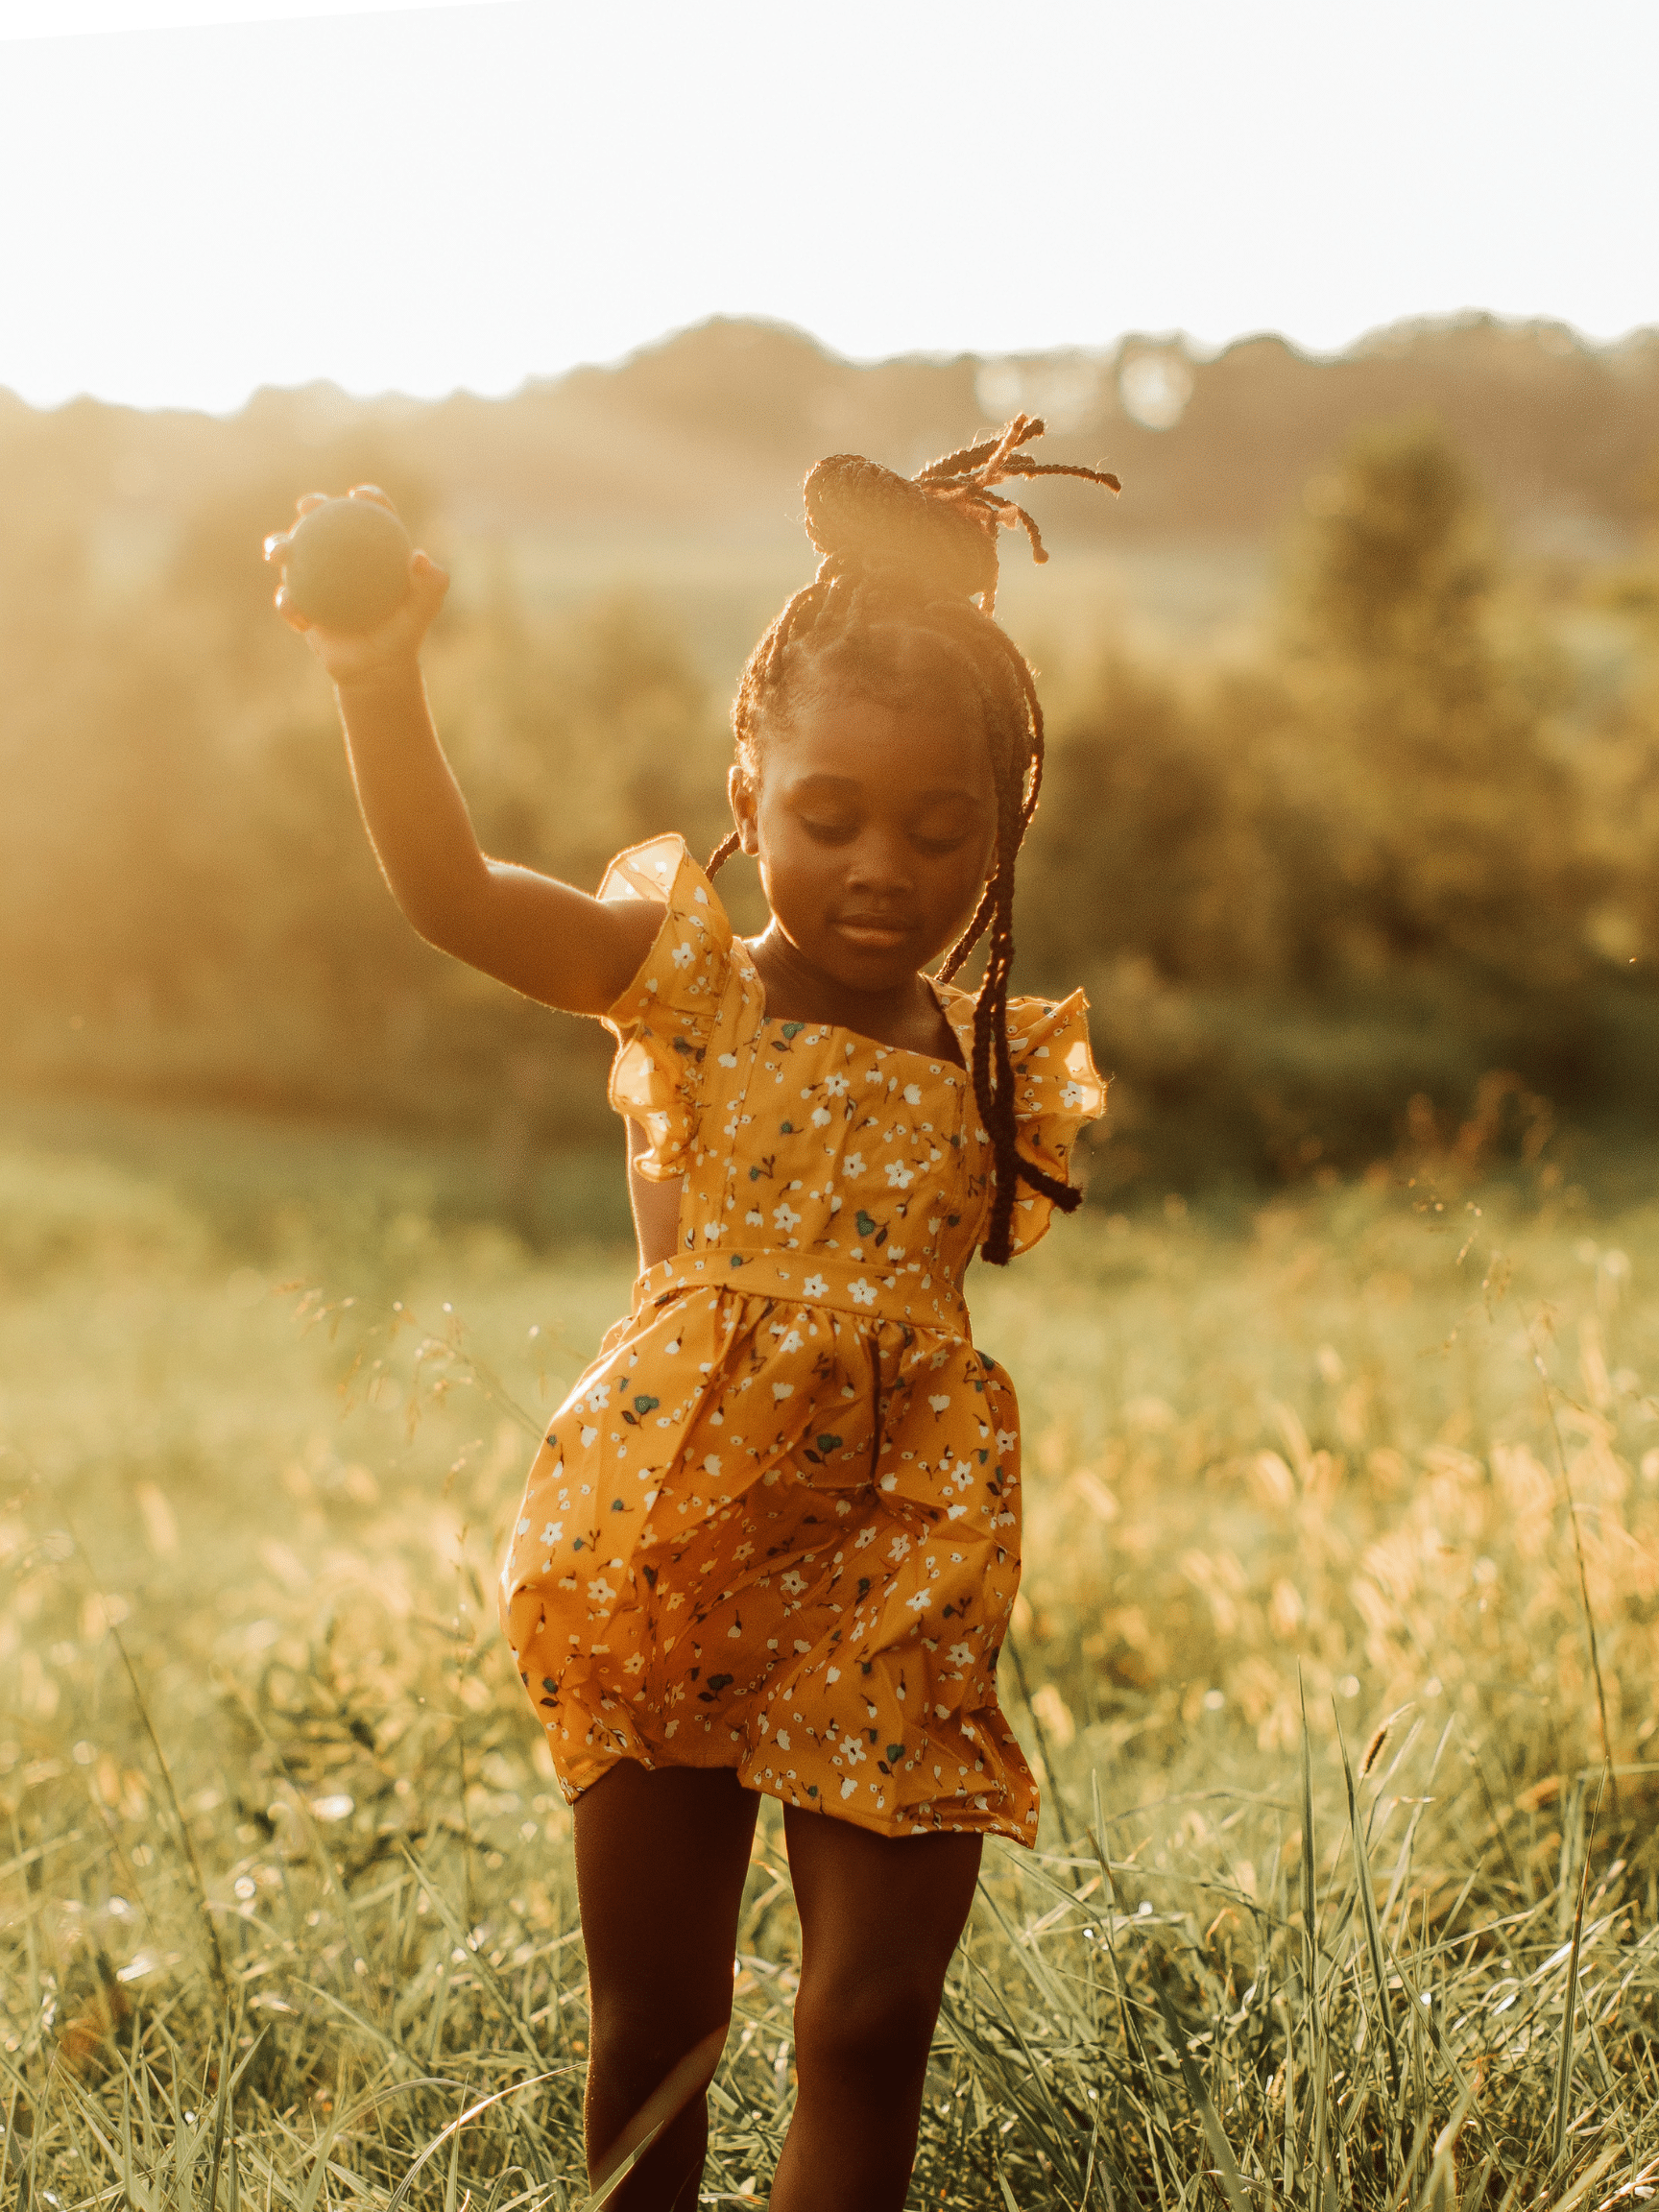 Little girl enjoying nature